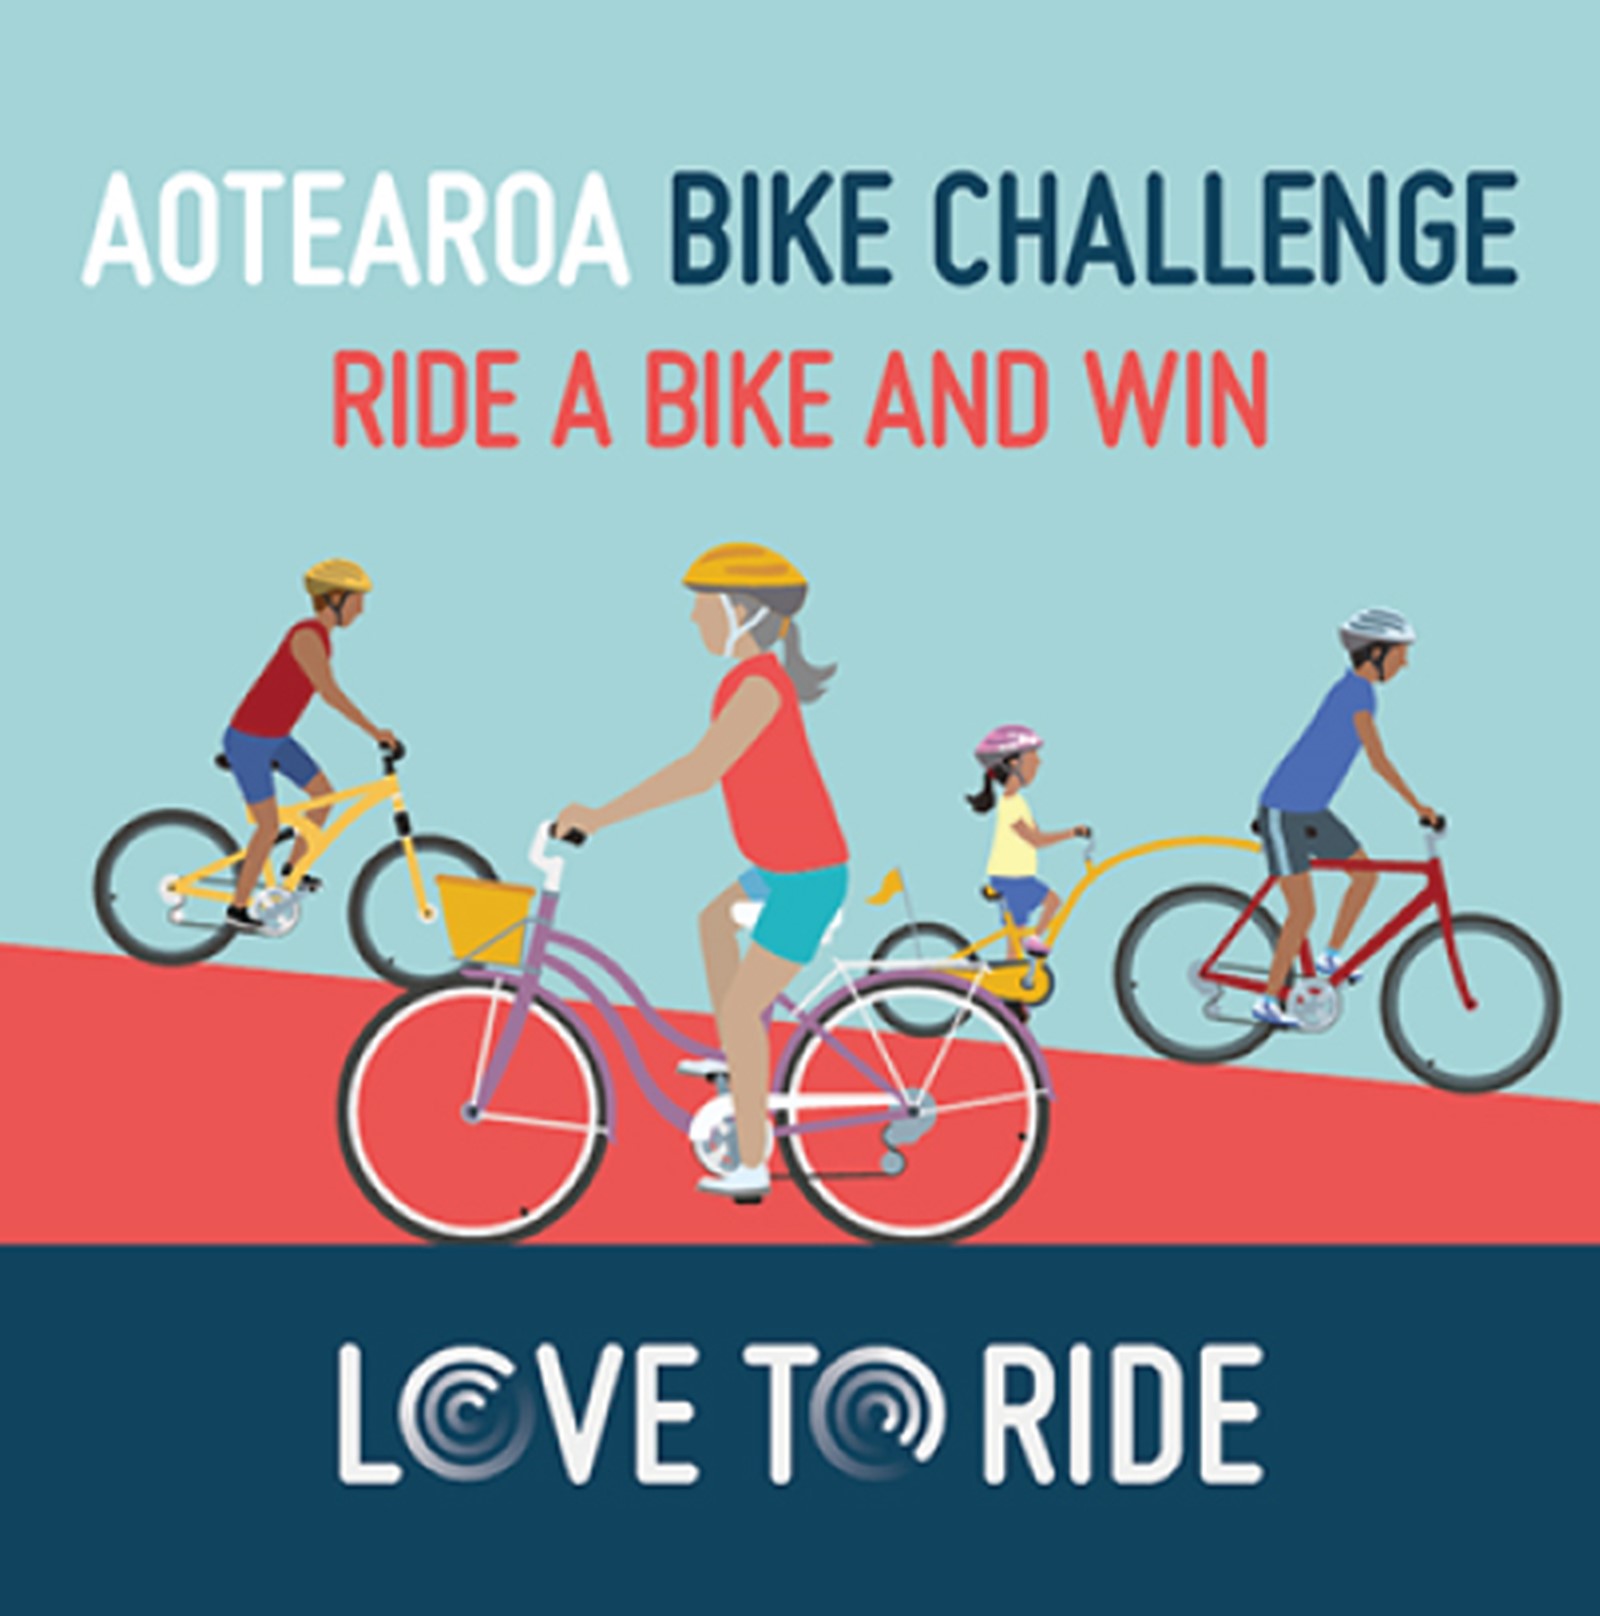 Aotearoa Bike Challenge. 